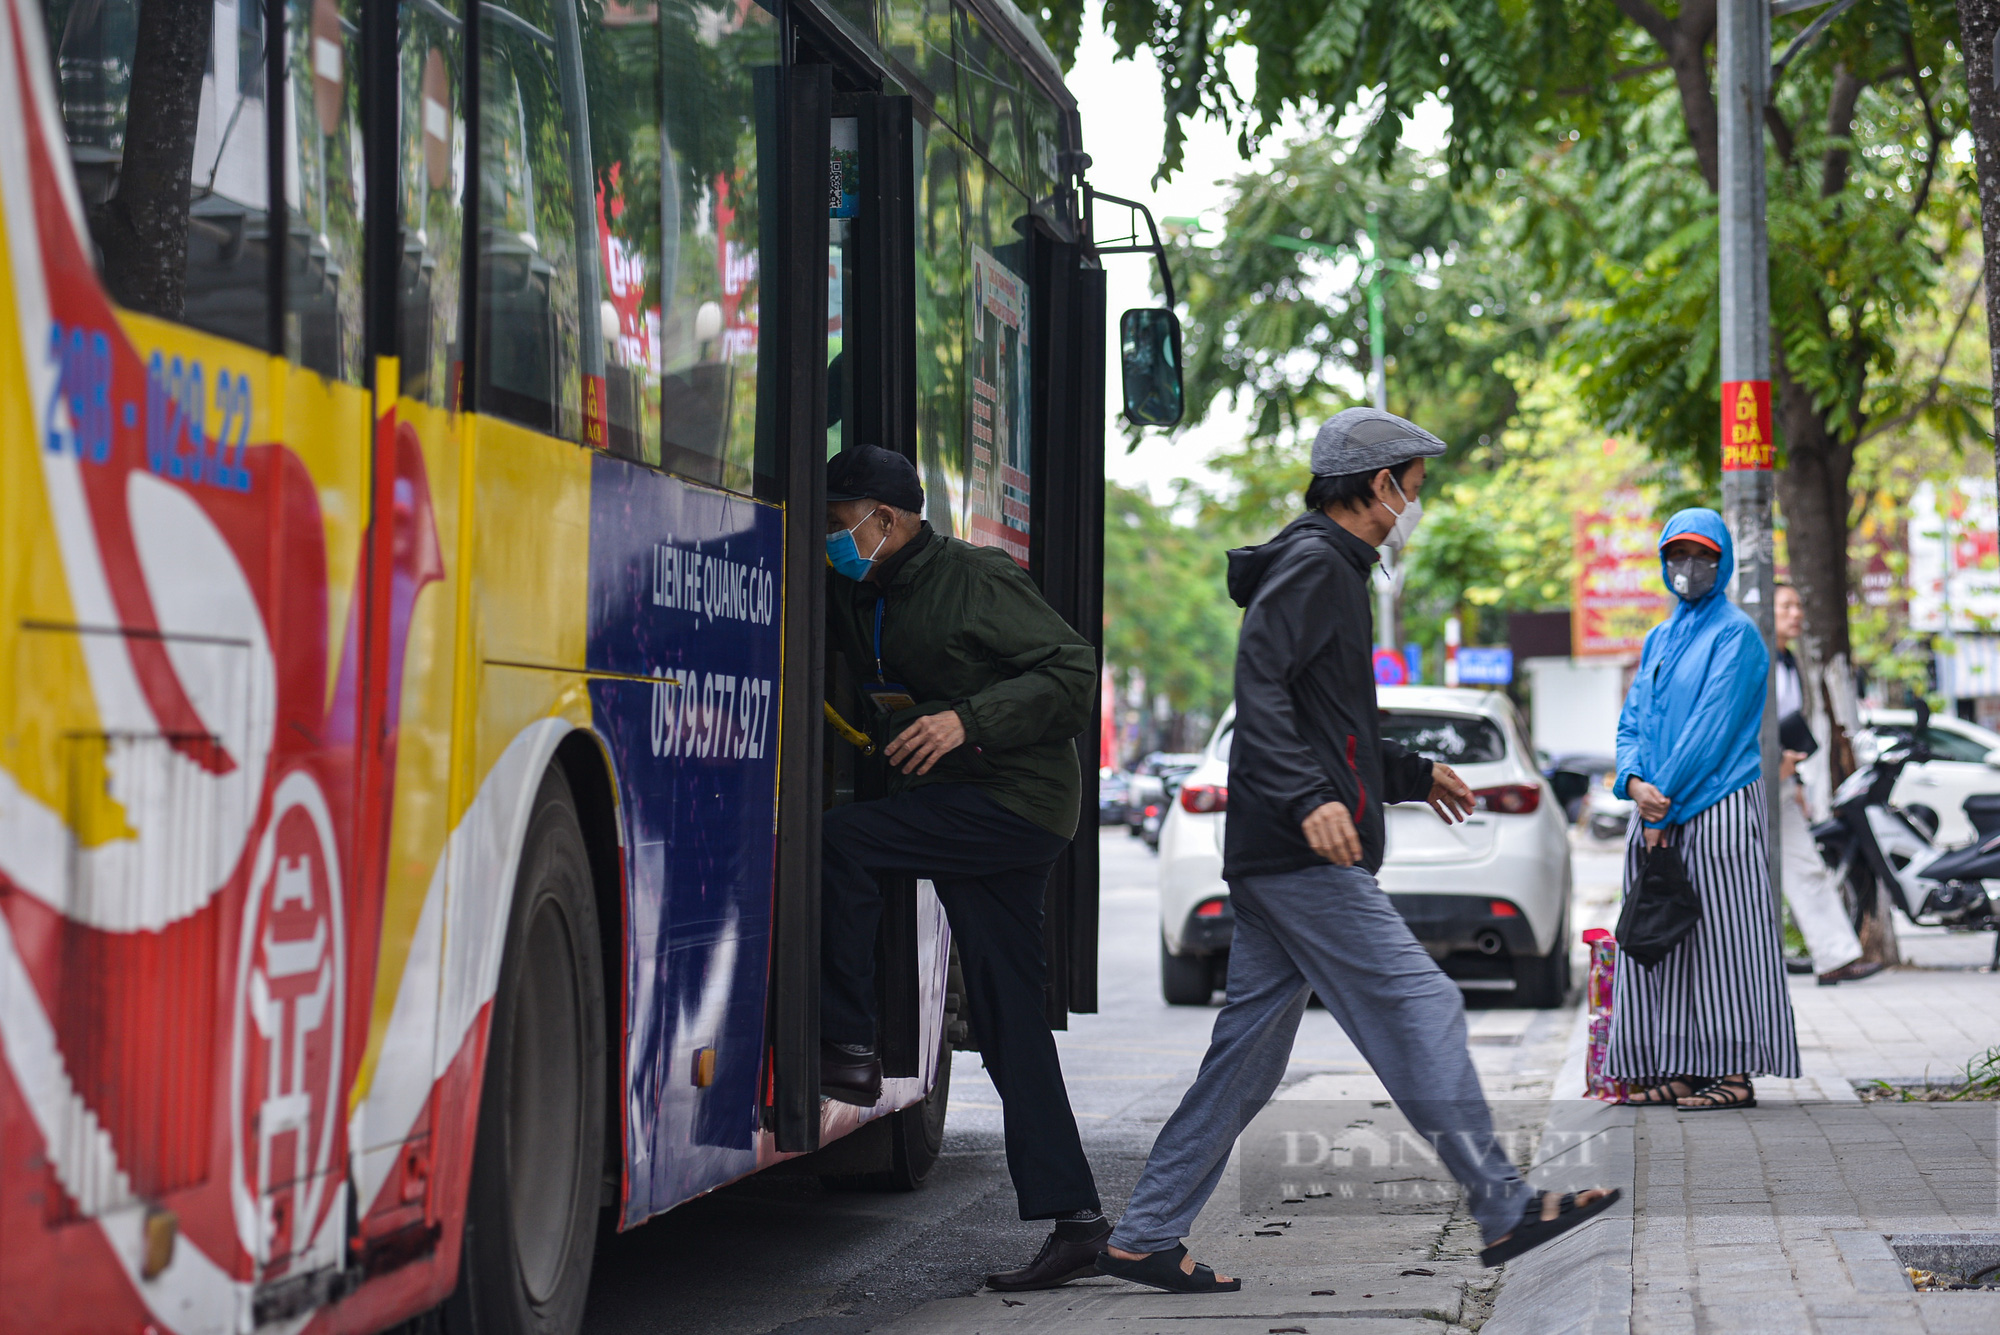 Hà Nội: Lên phương án nhân rộng điểm dừng xe buýt chuẩn châu Âu - Ảnh 5.